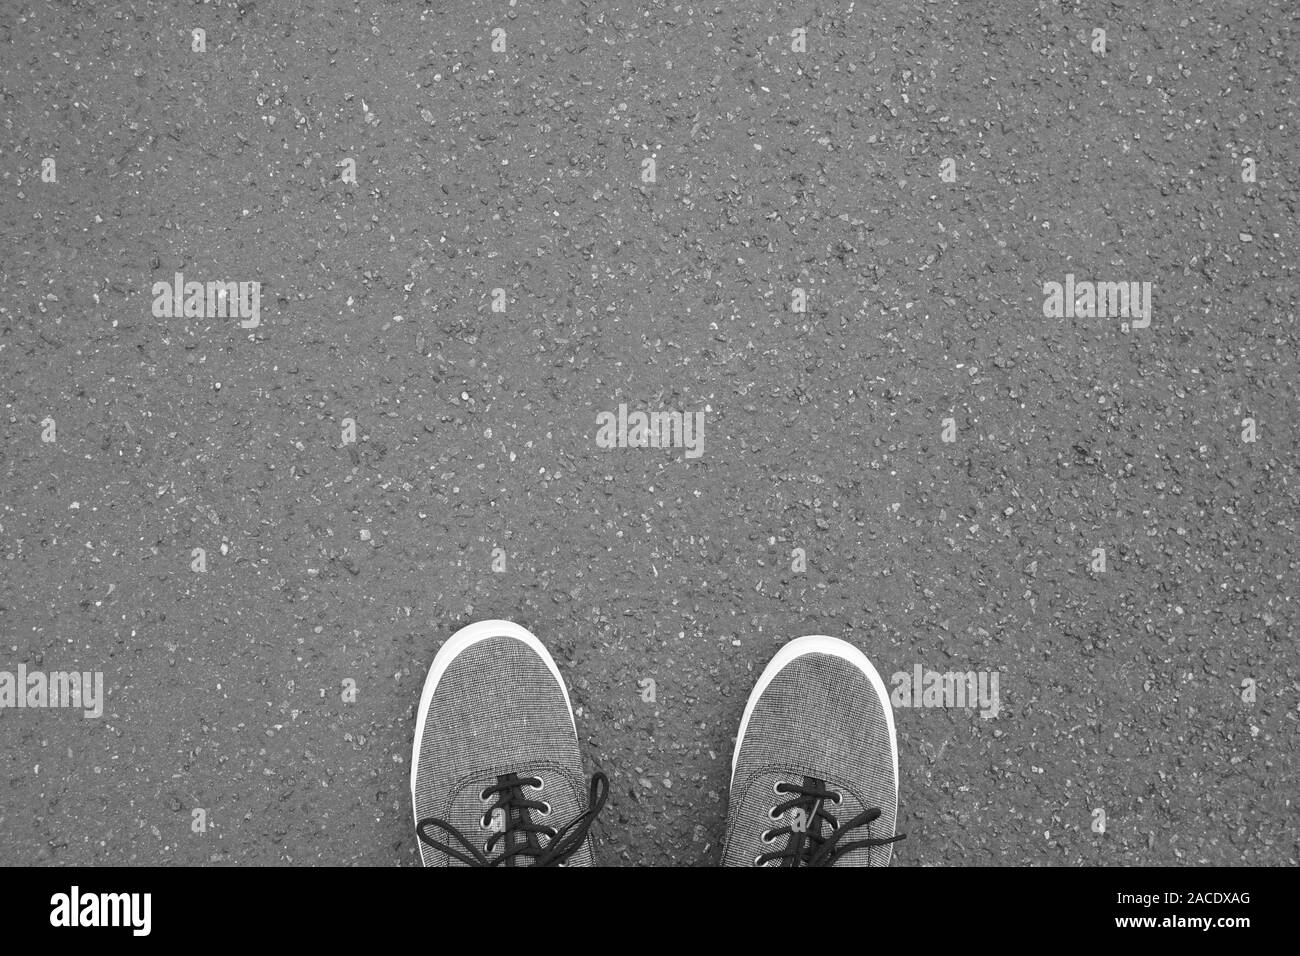 Pieds en chaussures de toile debout sur pied - rue de selfies vue personnel point de vue - Fond d'asphalte with copy space Banque D'Images